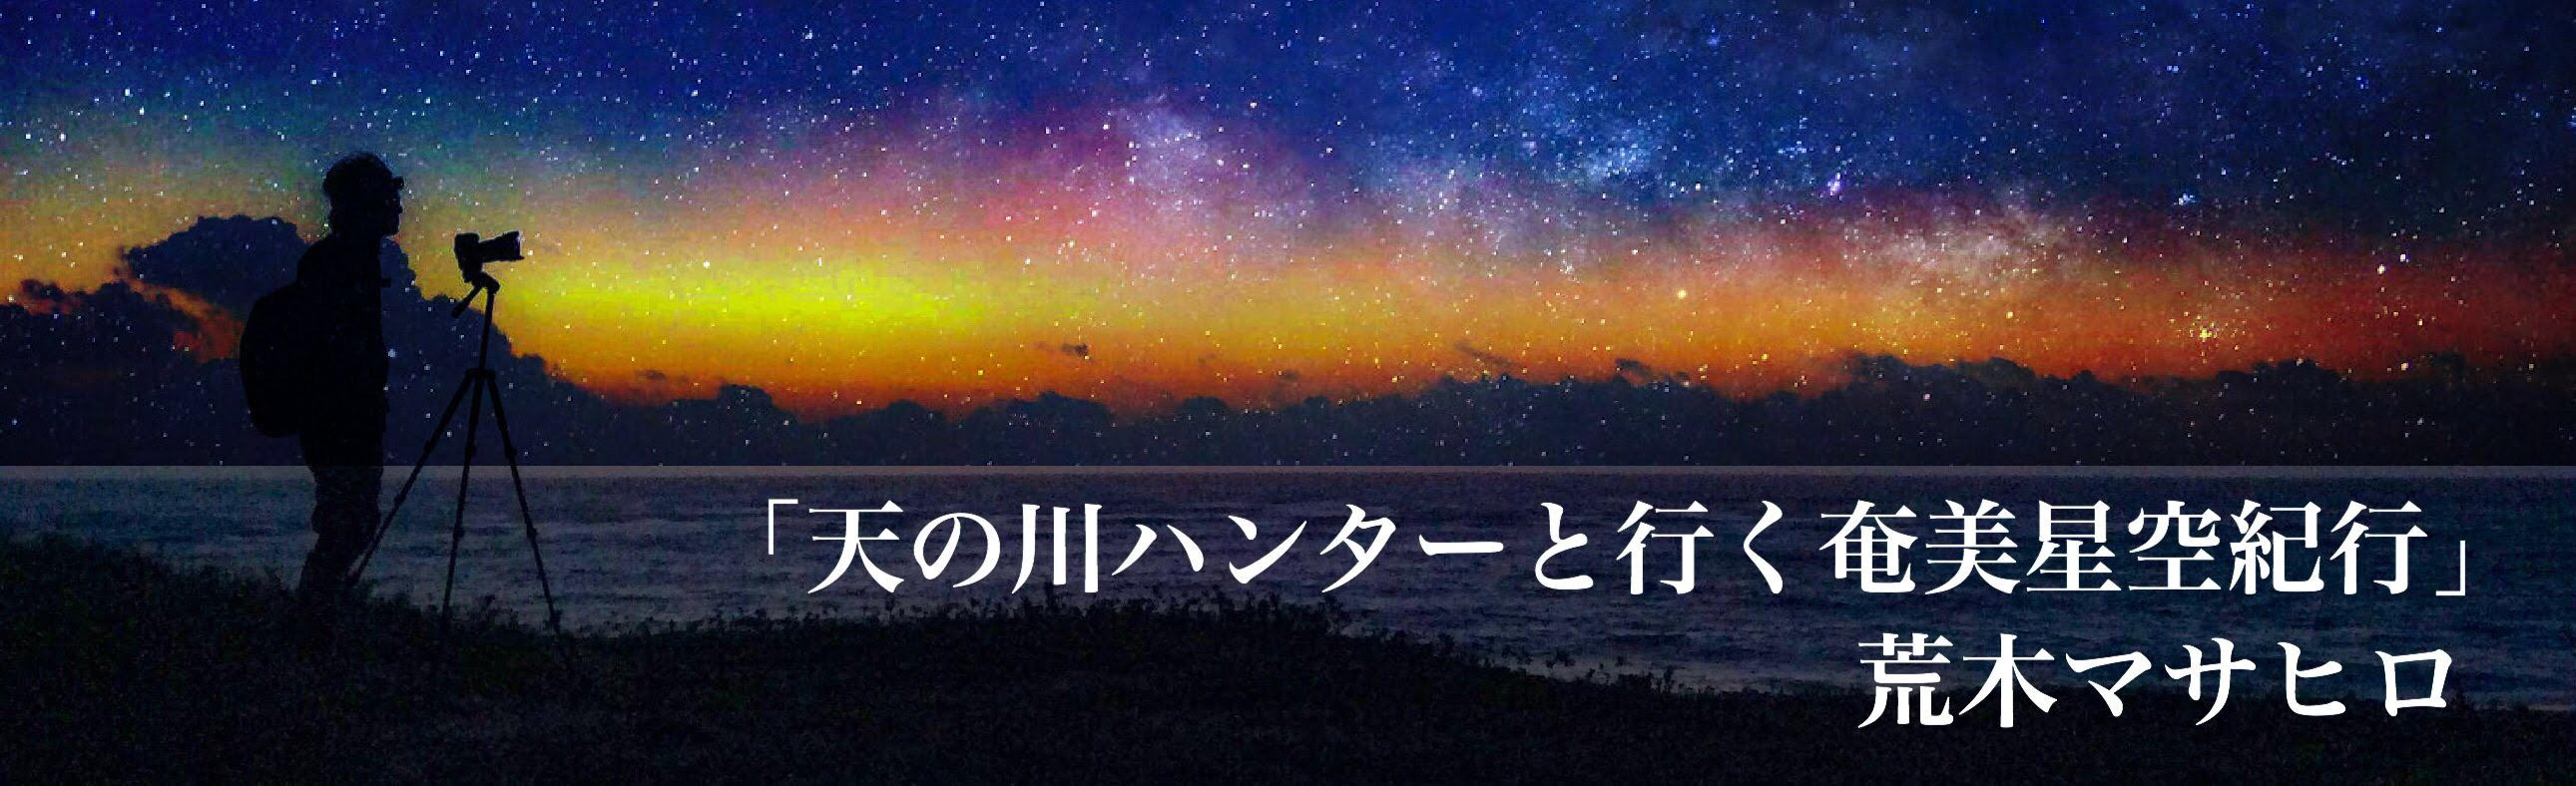 奄美の夕日と星空の写真hosizorakiko